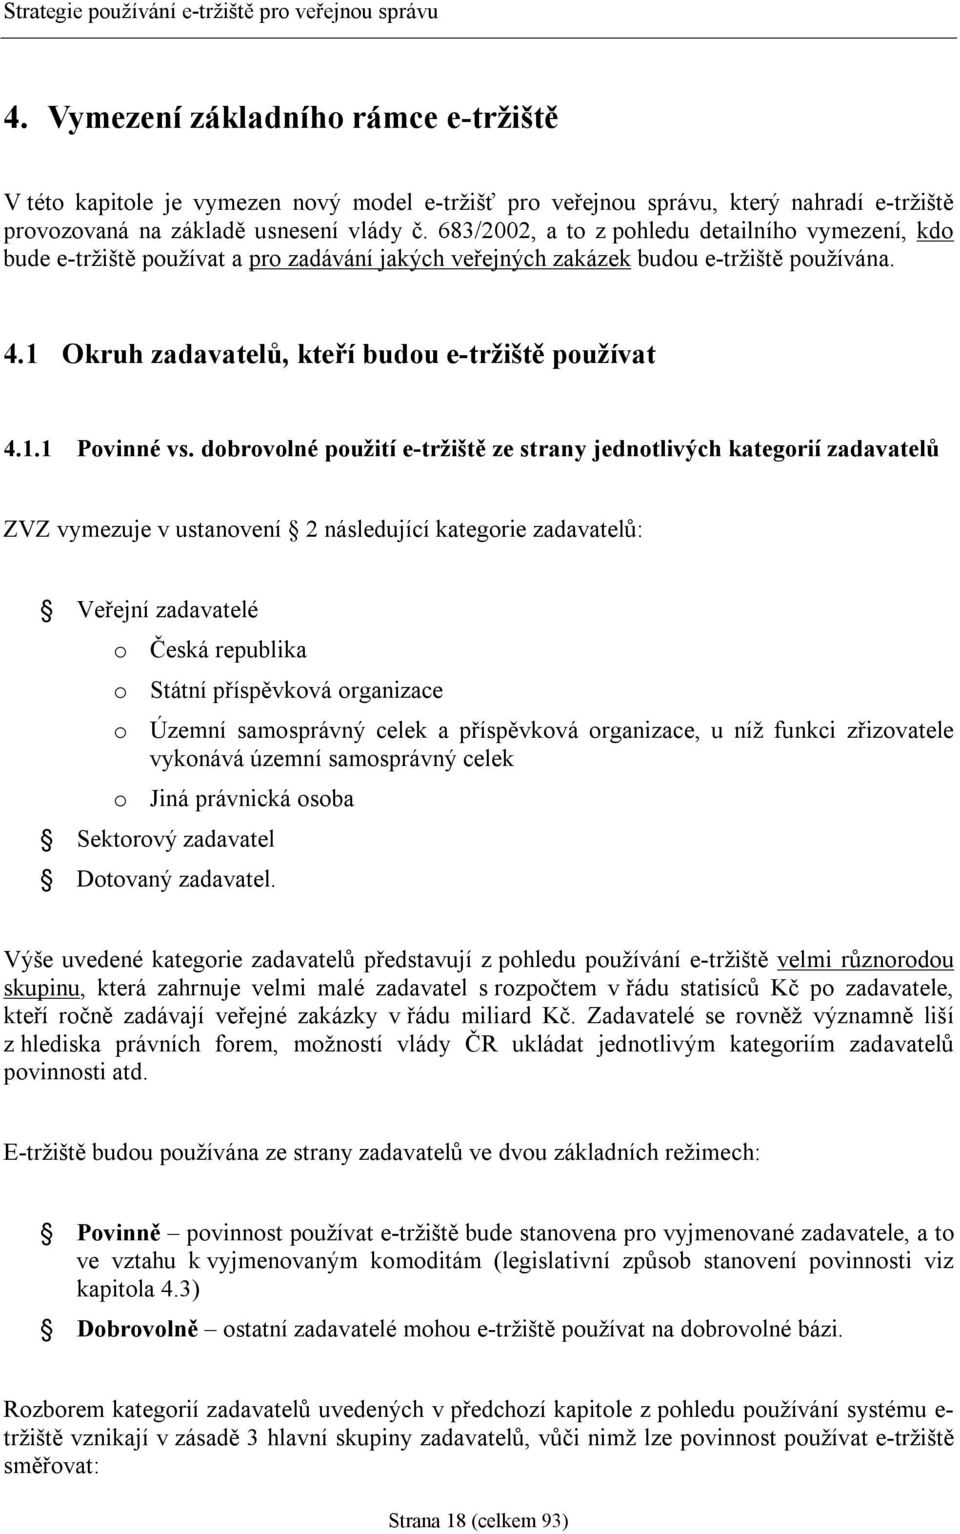 dobrovolné použití e-tržiště ze strany jednotlivých kategorií zadavatelů ZVZ vymezuje v ustanovení 2 následující kategorie zadavatelů: Veřejní zadavatelé o Česká republika o Státní příspěvková